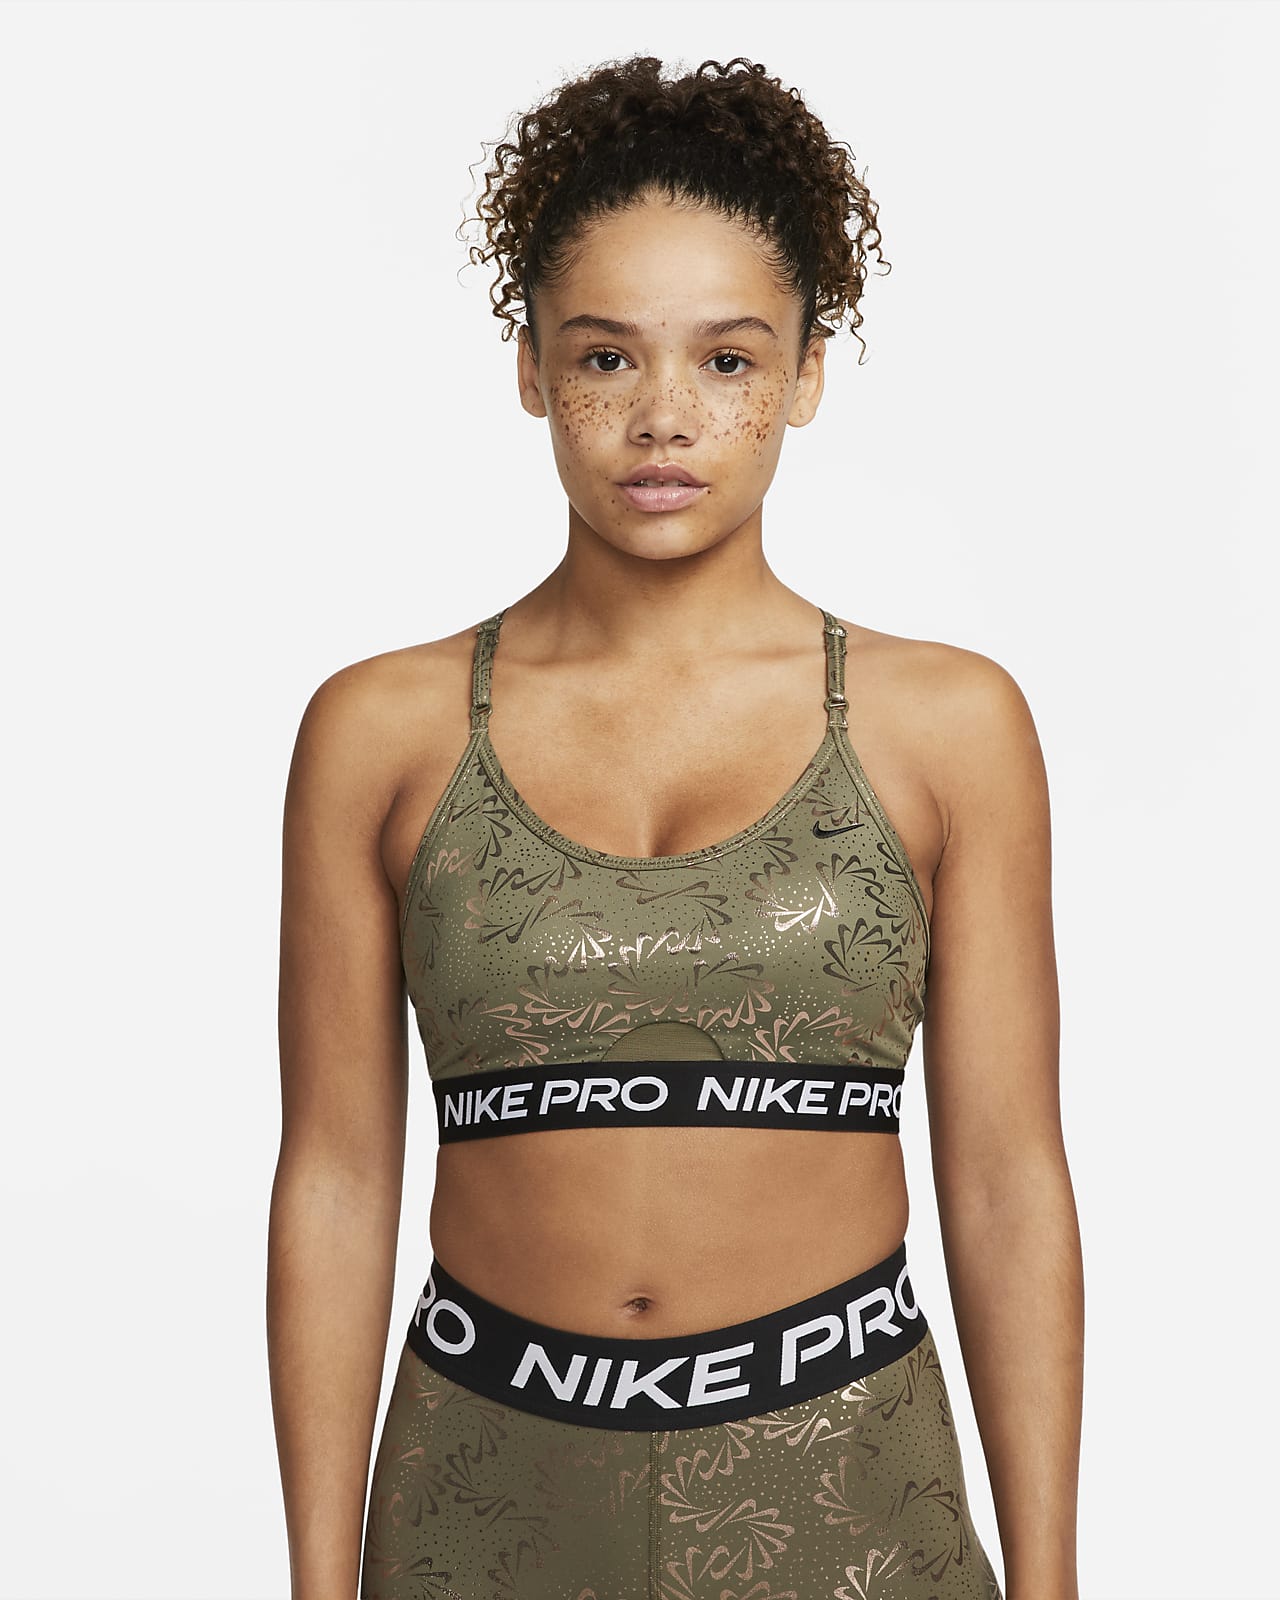 Bra con brillo y tirantes acolchado baja para mujer Nike Pro Nike.com